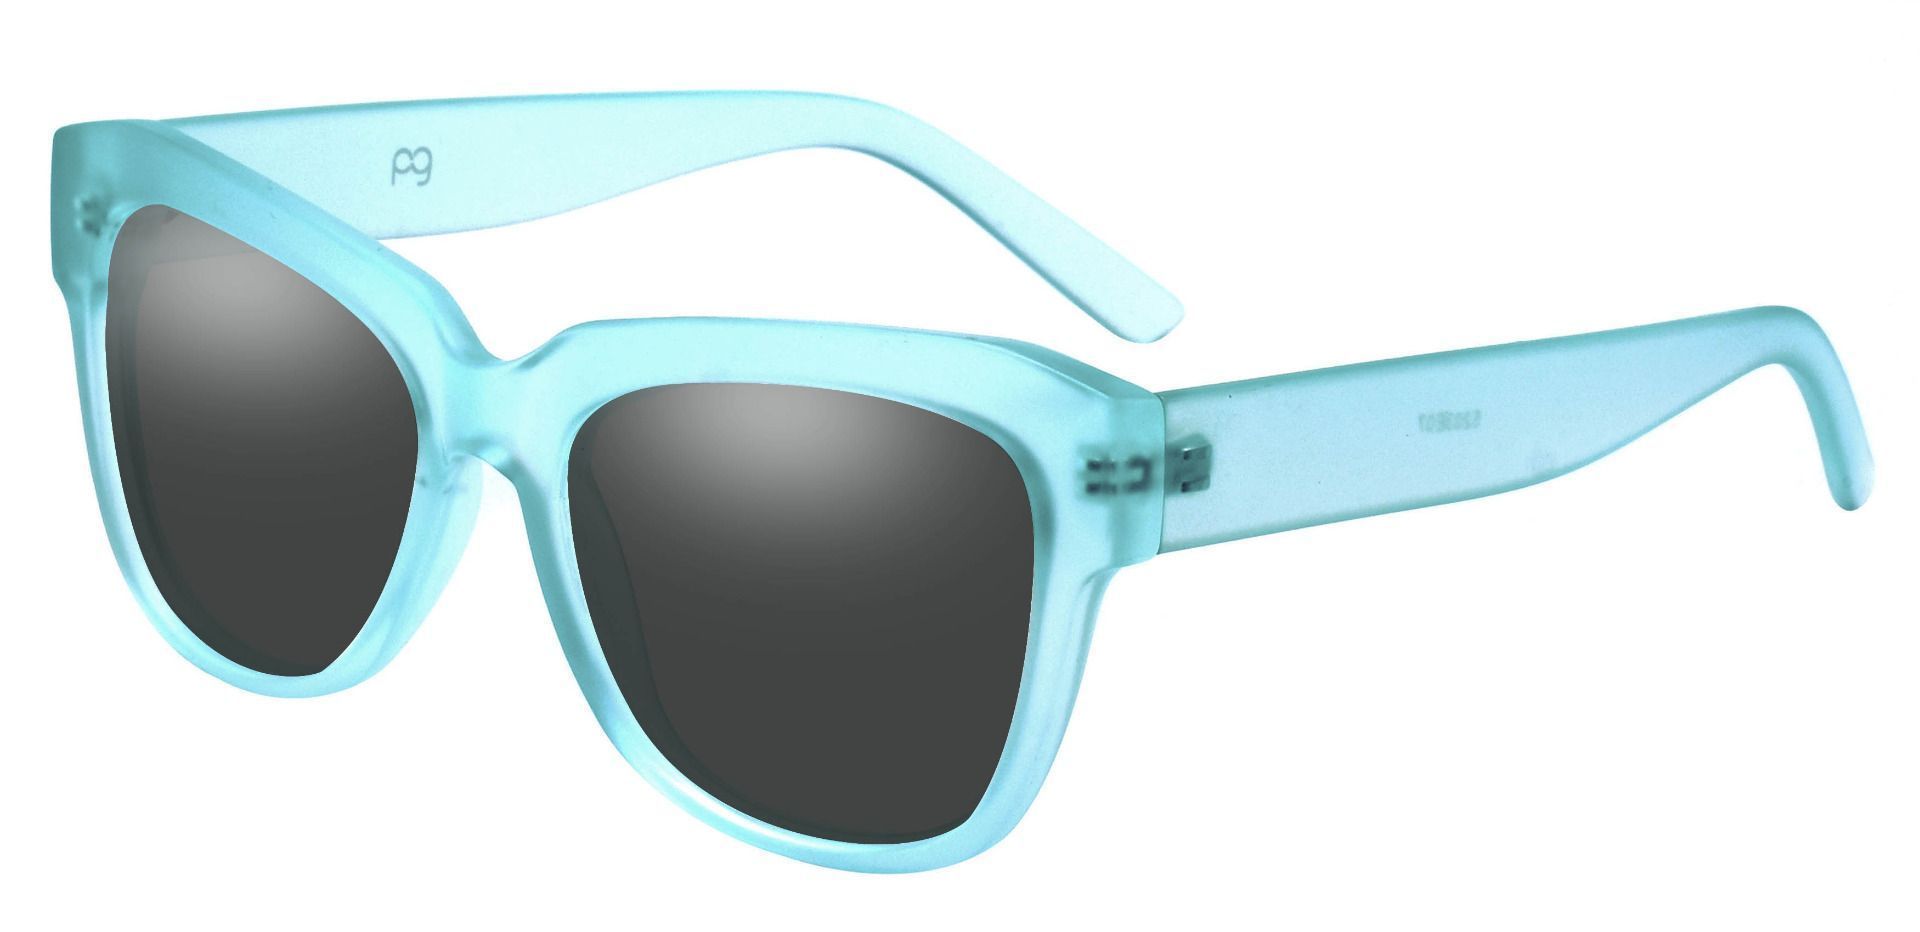 Gina Cat-Eye Progressive Sunglasses - Blue Frame With Gray Lenses